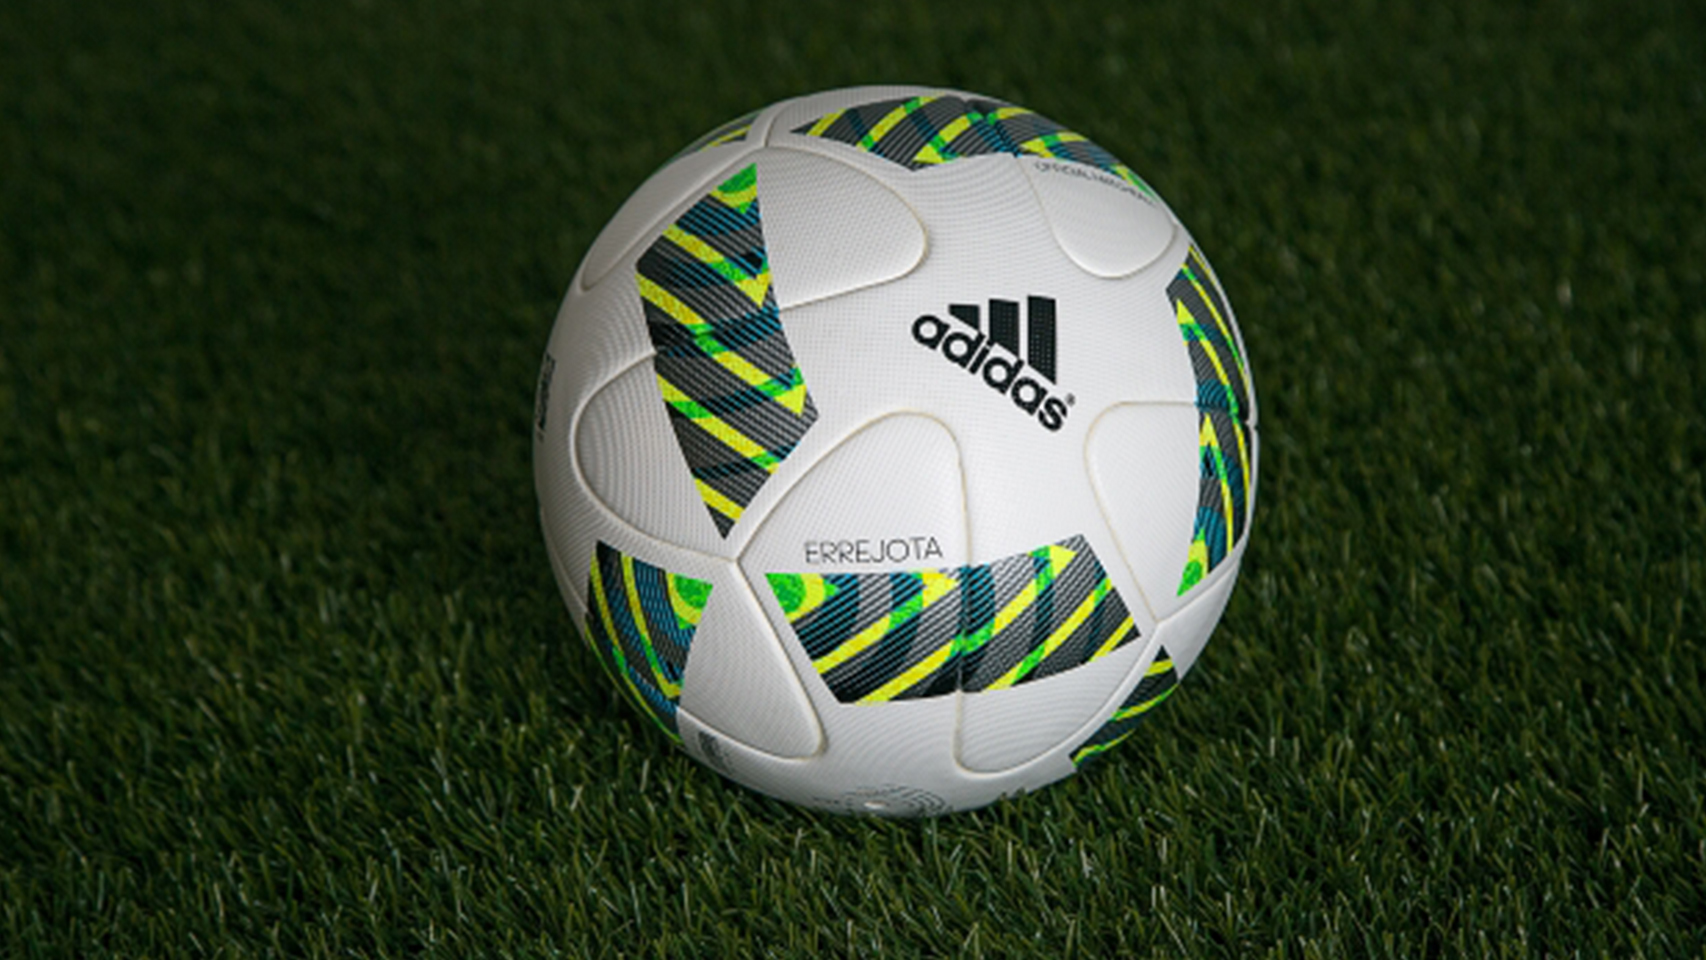 Adidas crea el balón oficial de futbol de los JJOO 2016, Errejota.